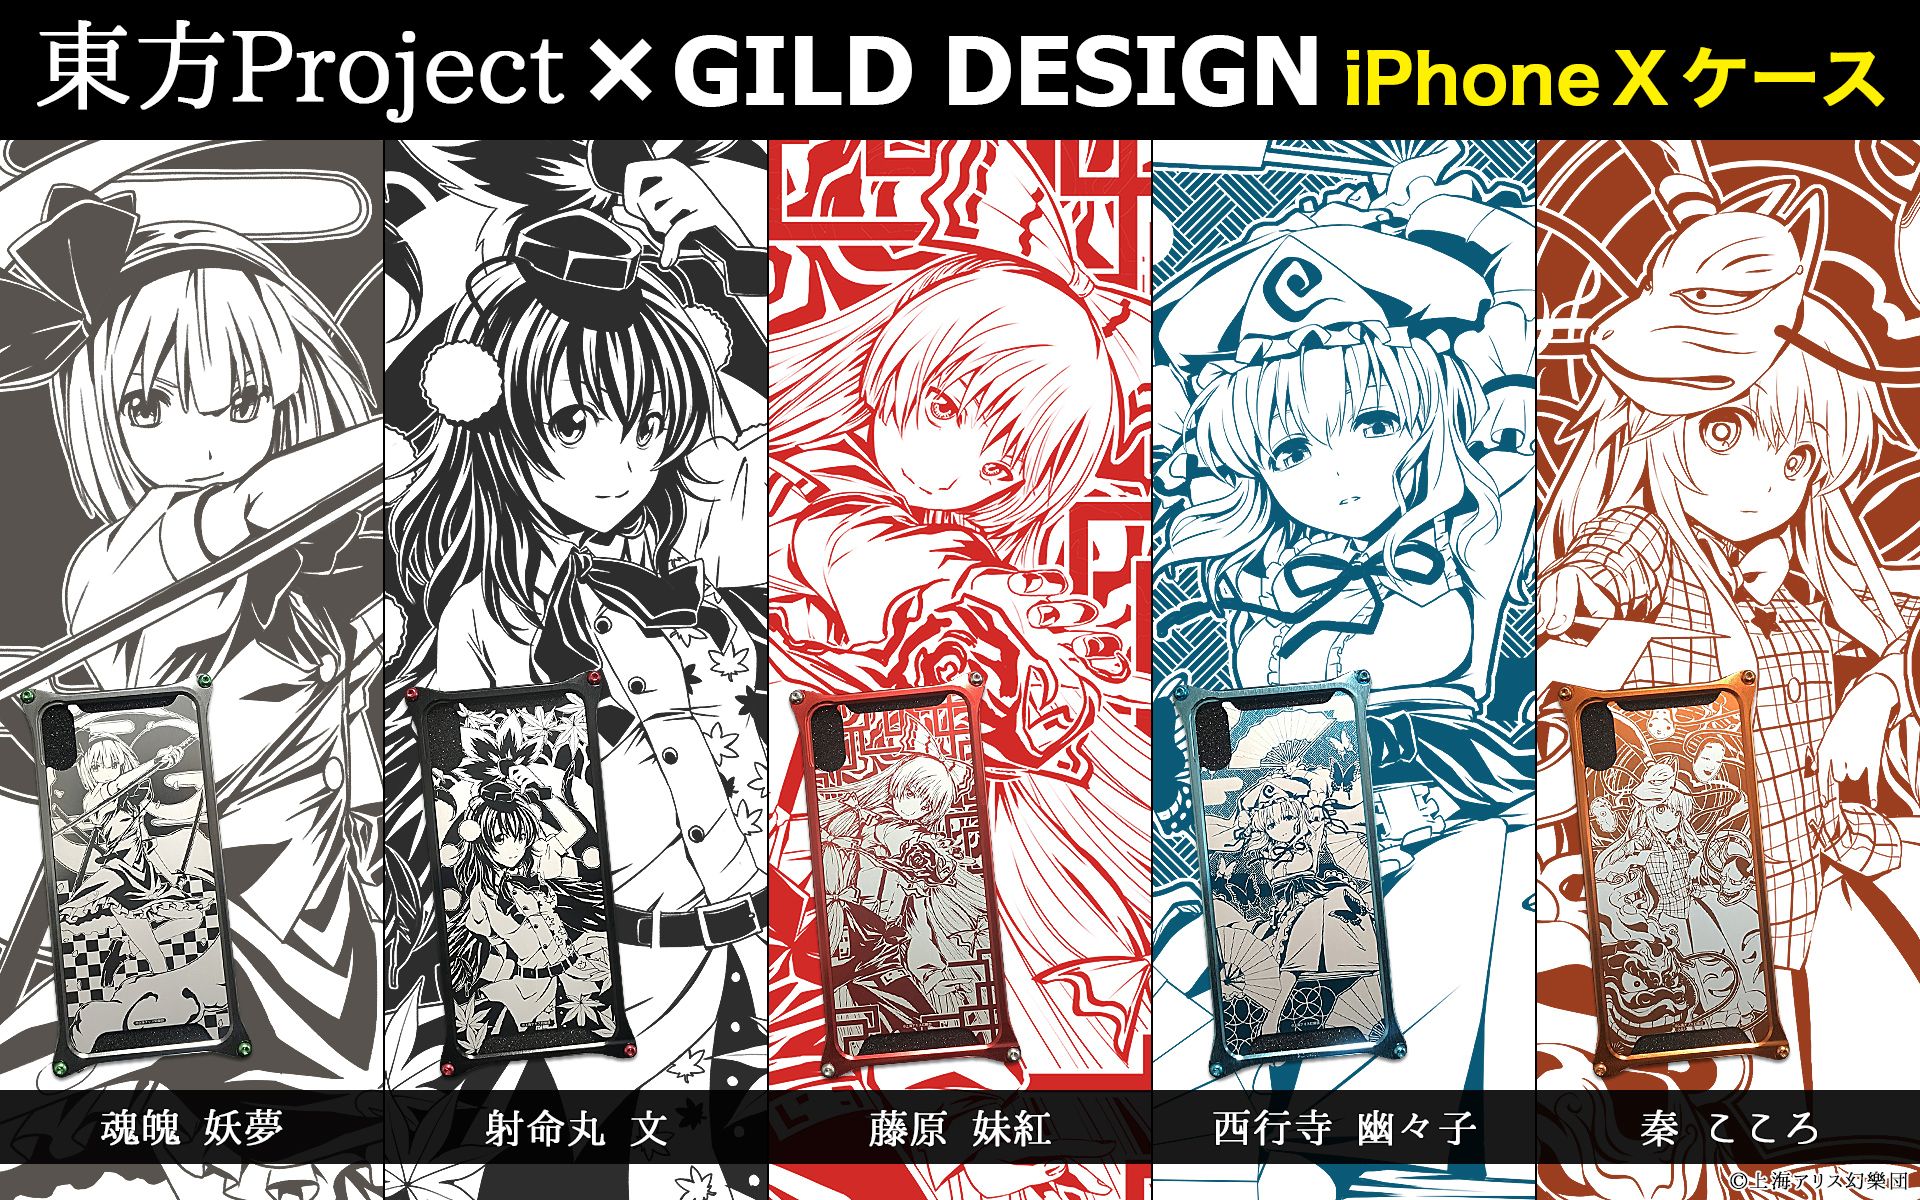 画像集 007 東方project Gild Design Iphone X対応ケース第2弾の予約受付開始 4gamer Net